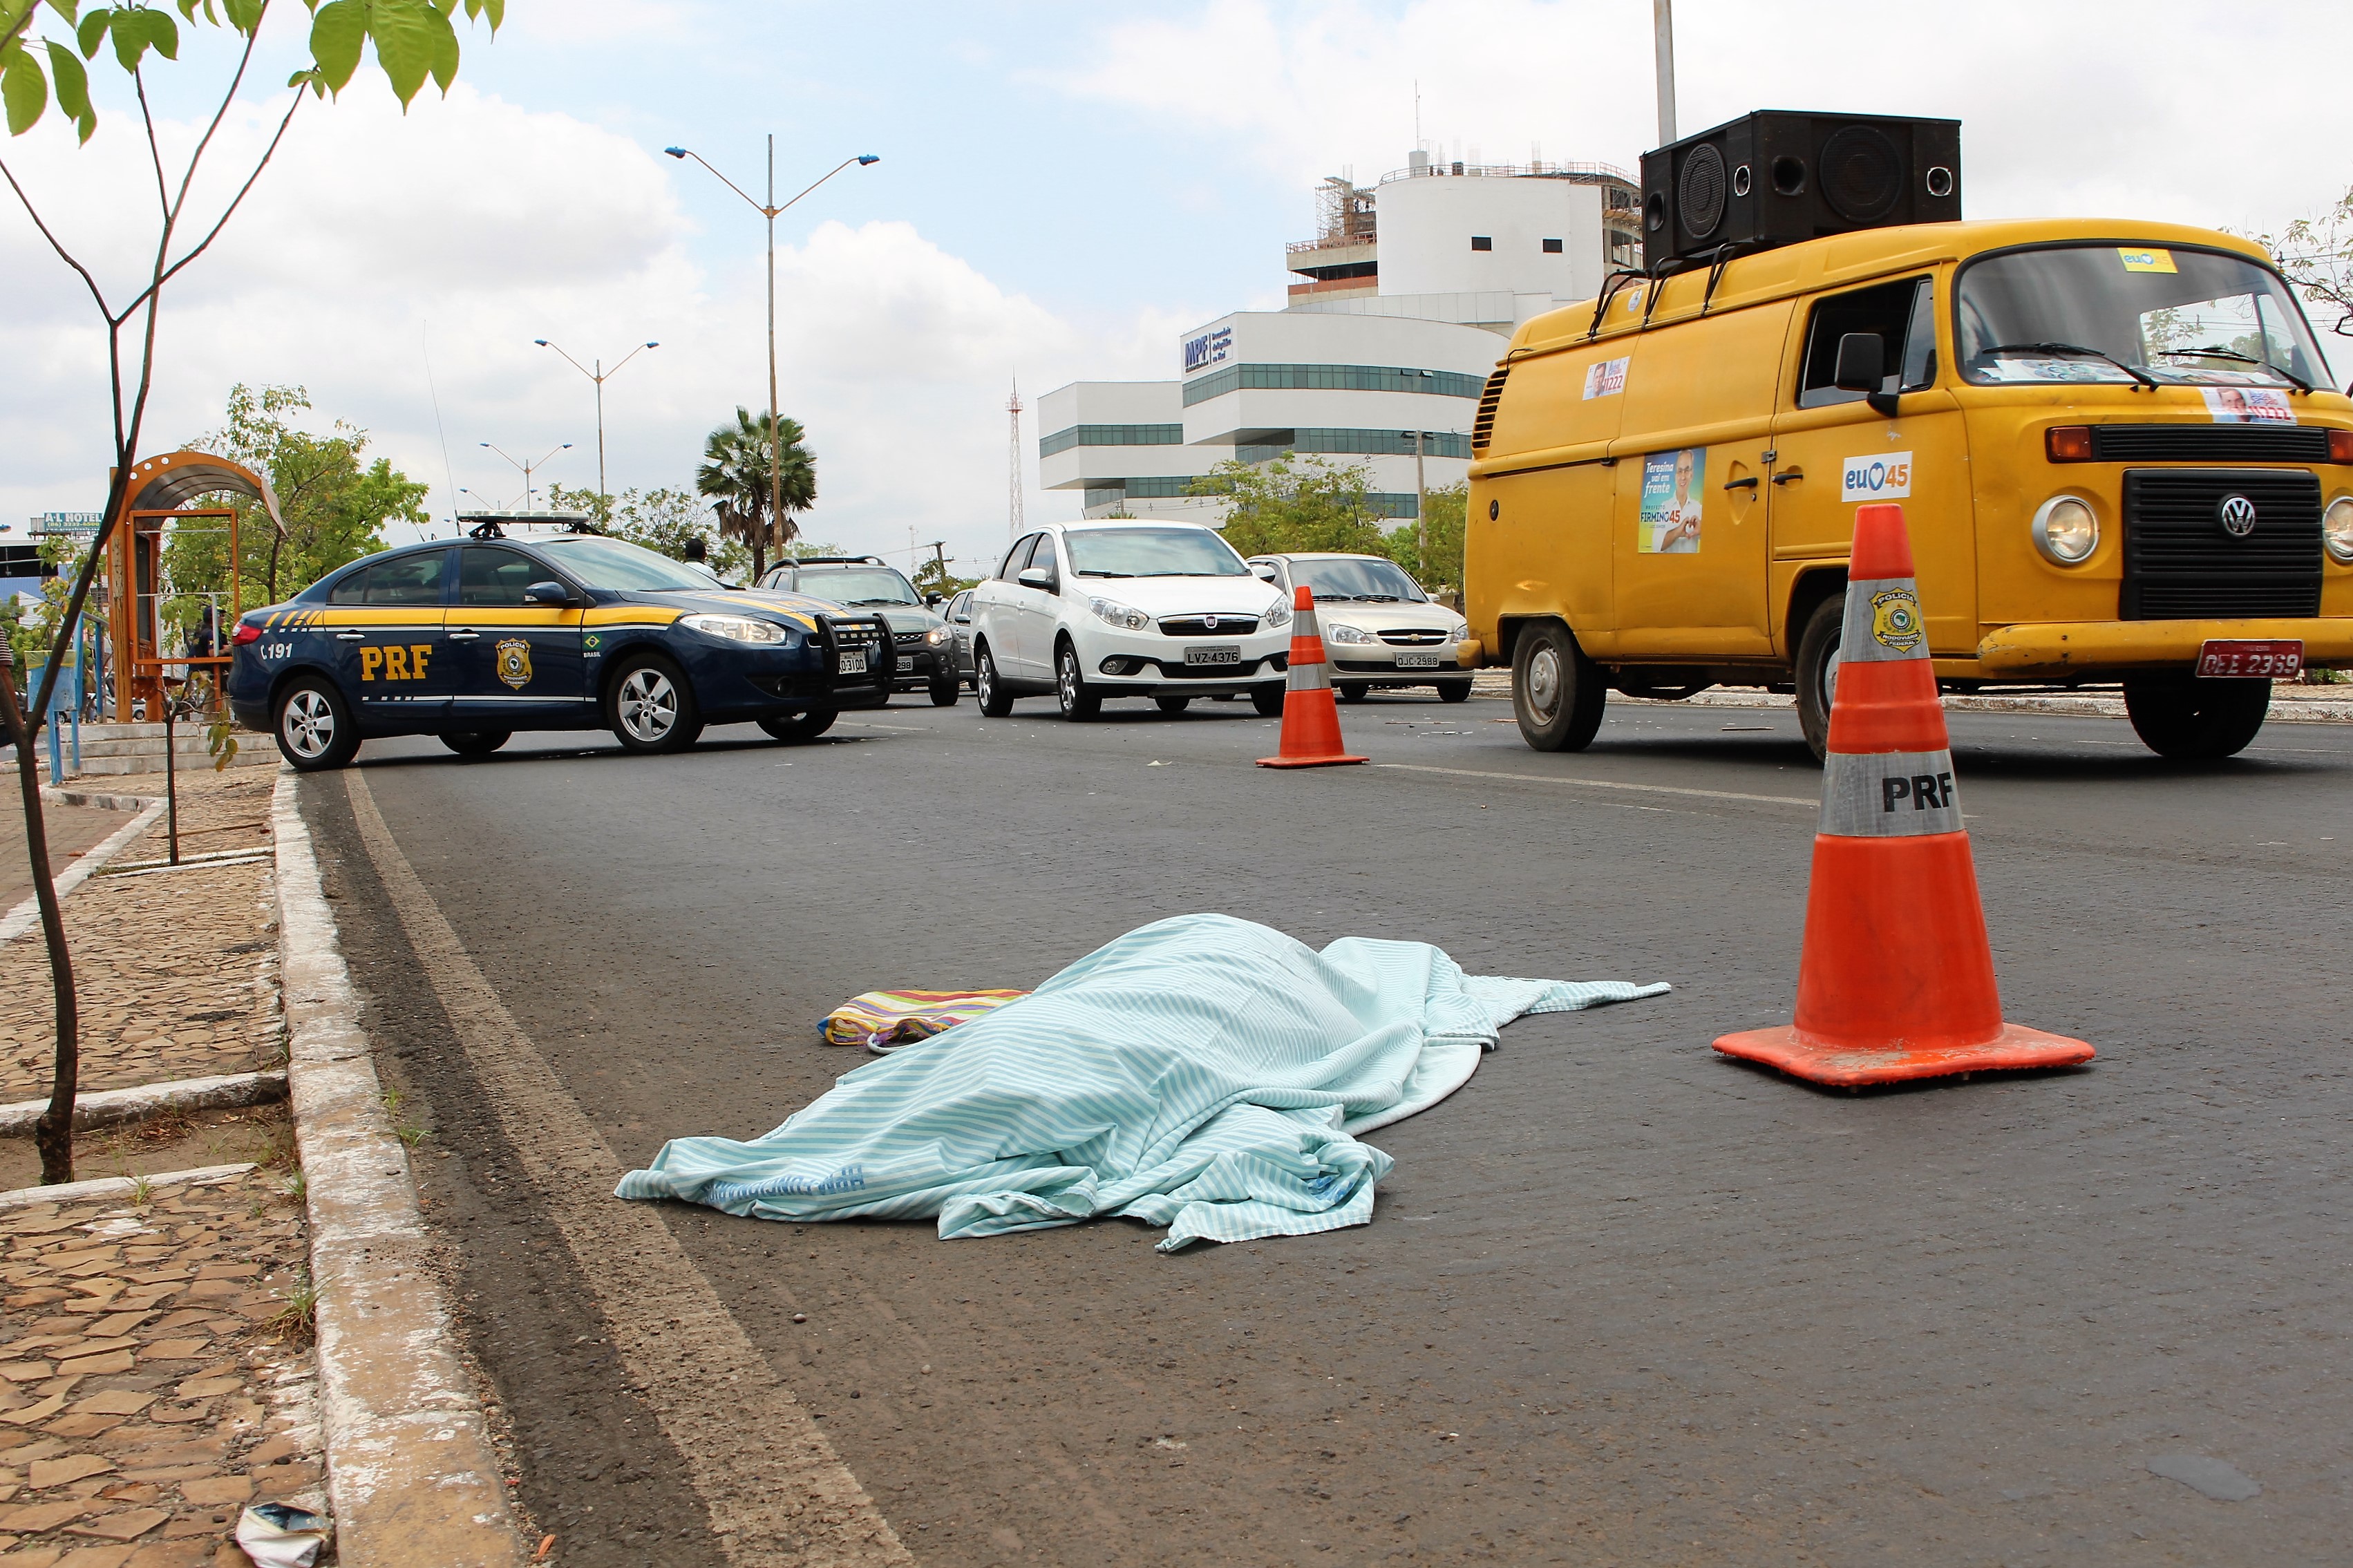 O corpo estendido no asfalto: mais uma vítima do trânsito em Teresina